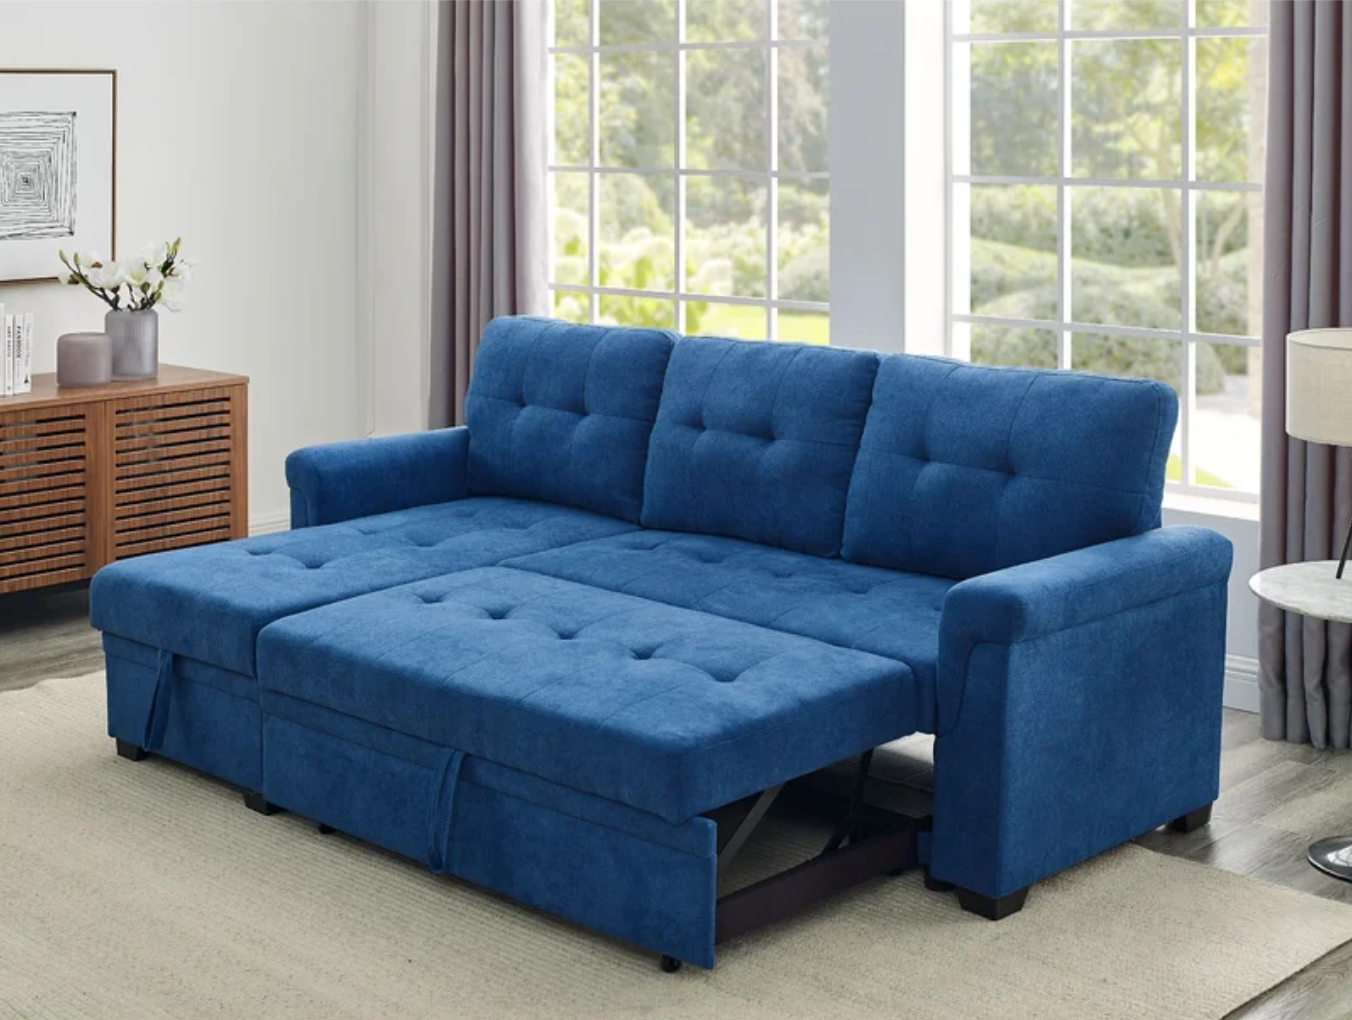 Sofa Cama Visby - 228 cm de Mueblemx